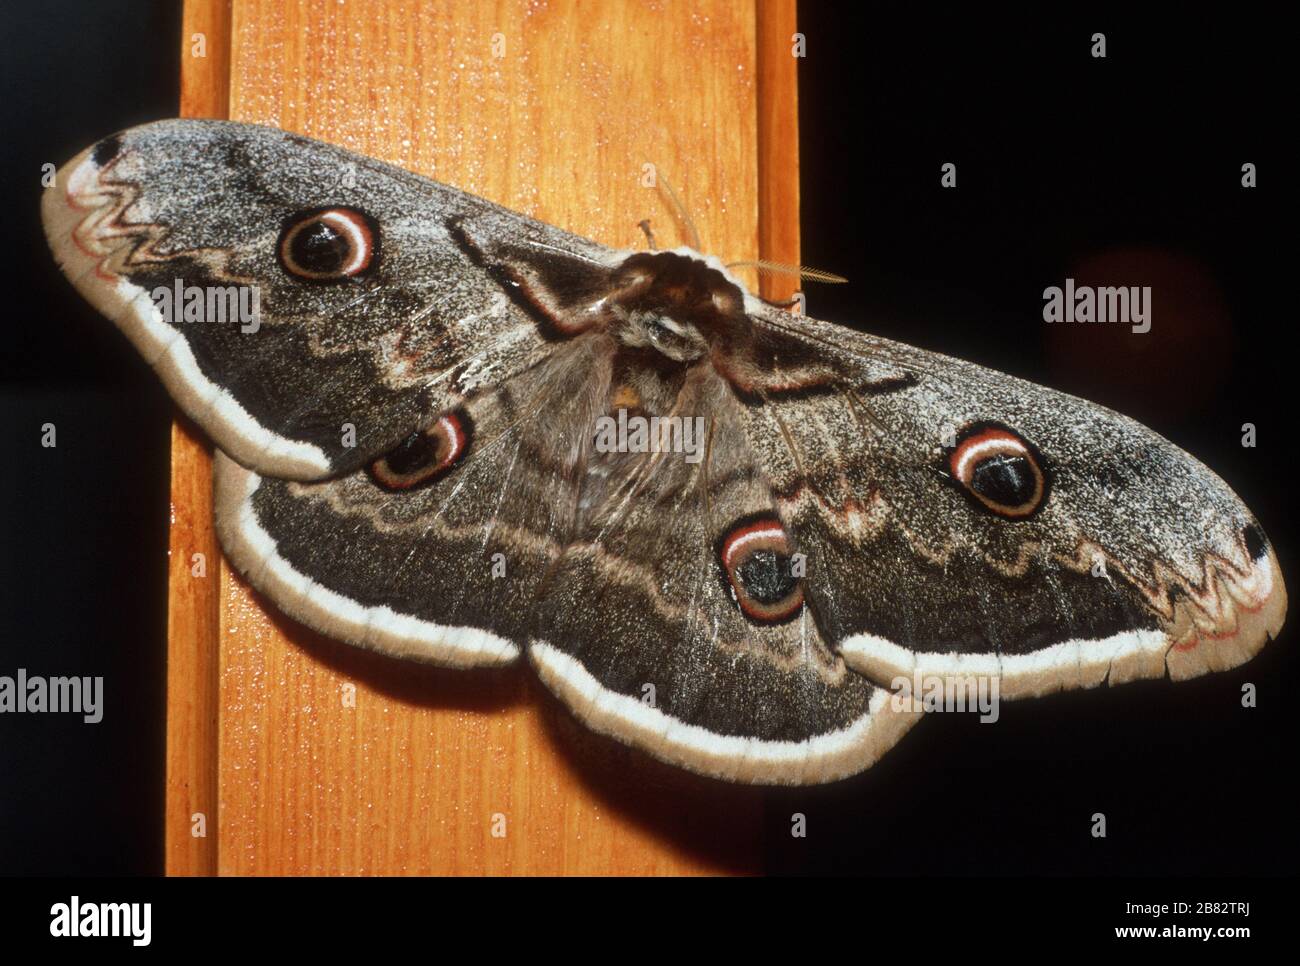 Moth di Peacock gigante (Saturnia pyri) in Lia (Lias), Epiro, Grecia. I falsi "occhi" sulle ali possono scoraggiare i predatori. Questo è un insetto enorme - il pilastro di legno è circa 100mm / 4 pollici attraverso. Foto Stock